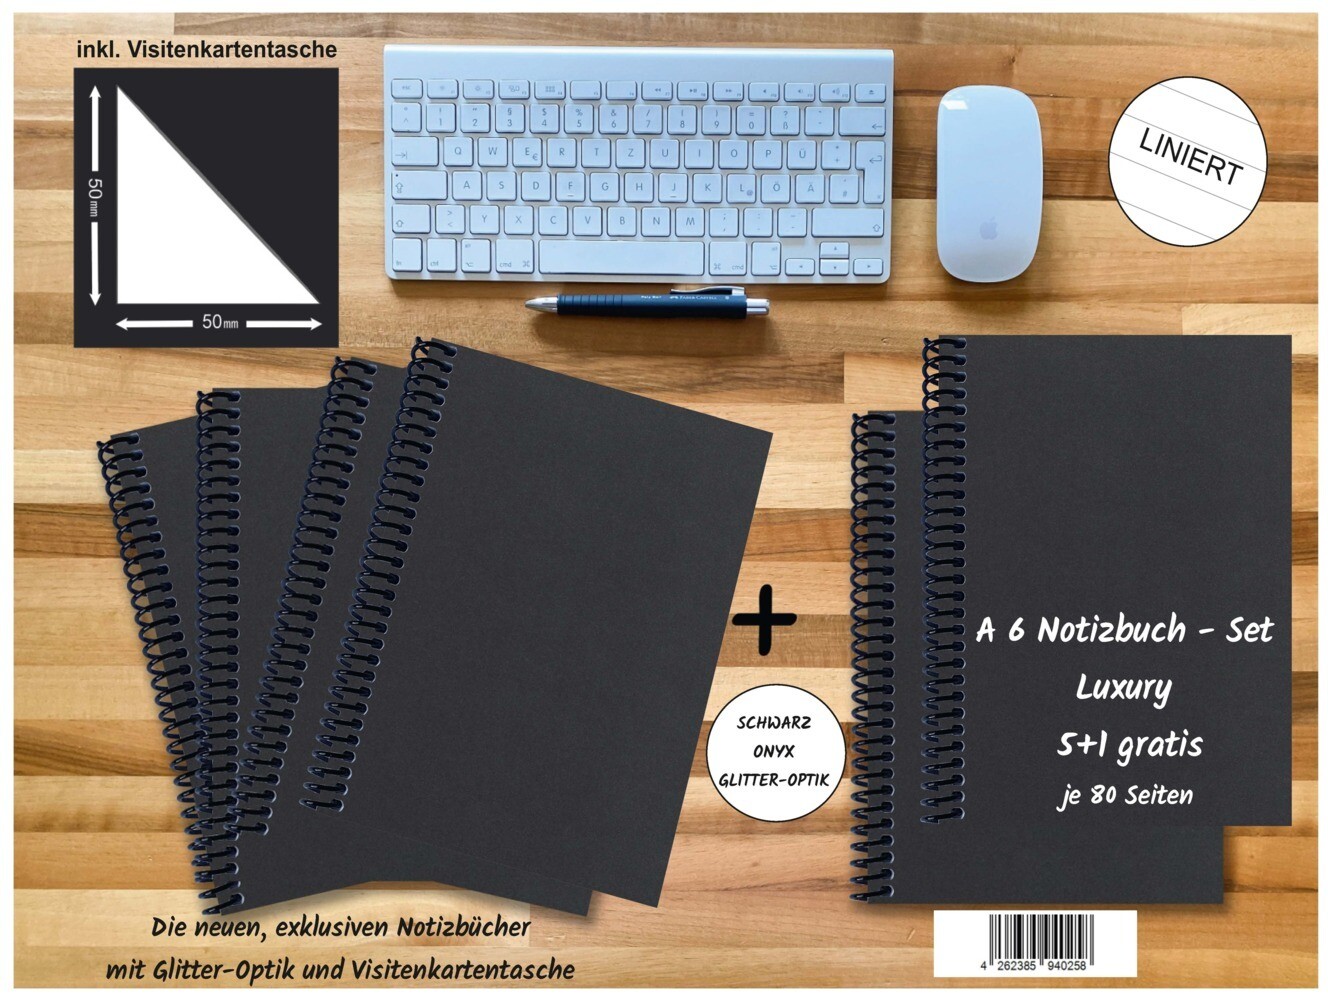 A 6 Notizbuch - Set 4+2 gratis Luxury 80 Seiten SCHWARZ ONYX GLITTER-OPTIK liniert